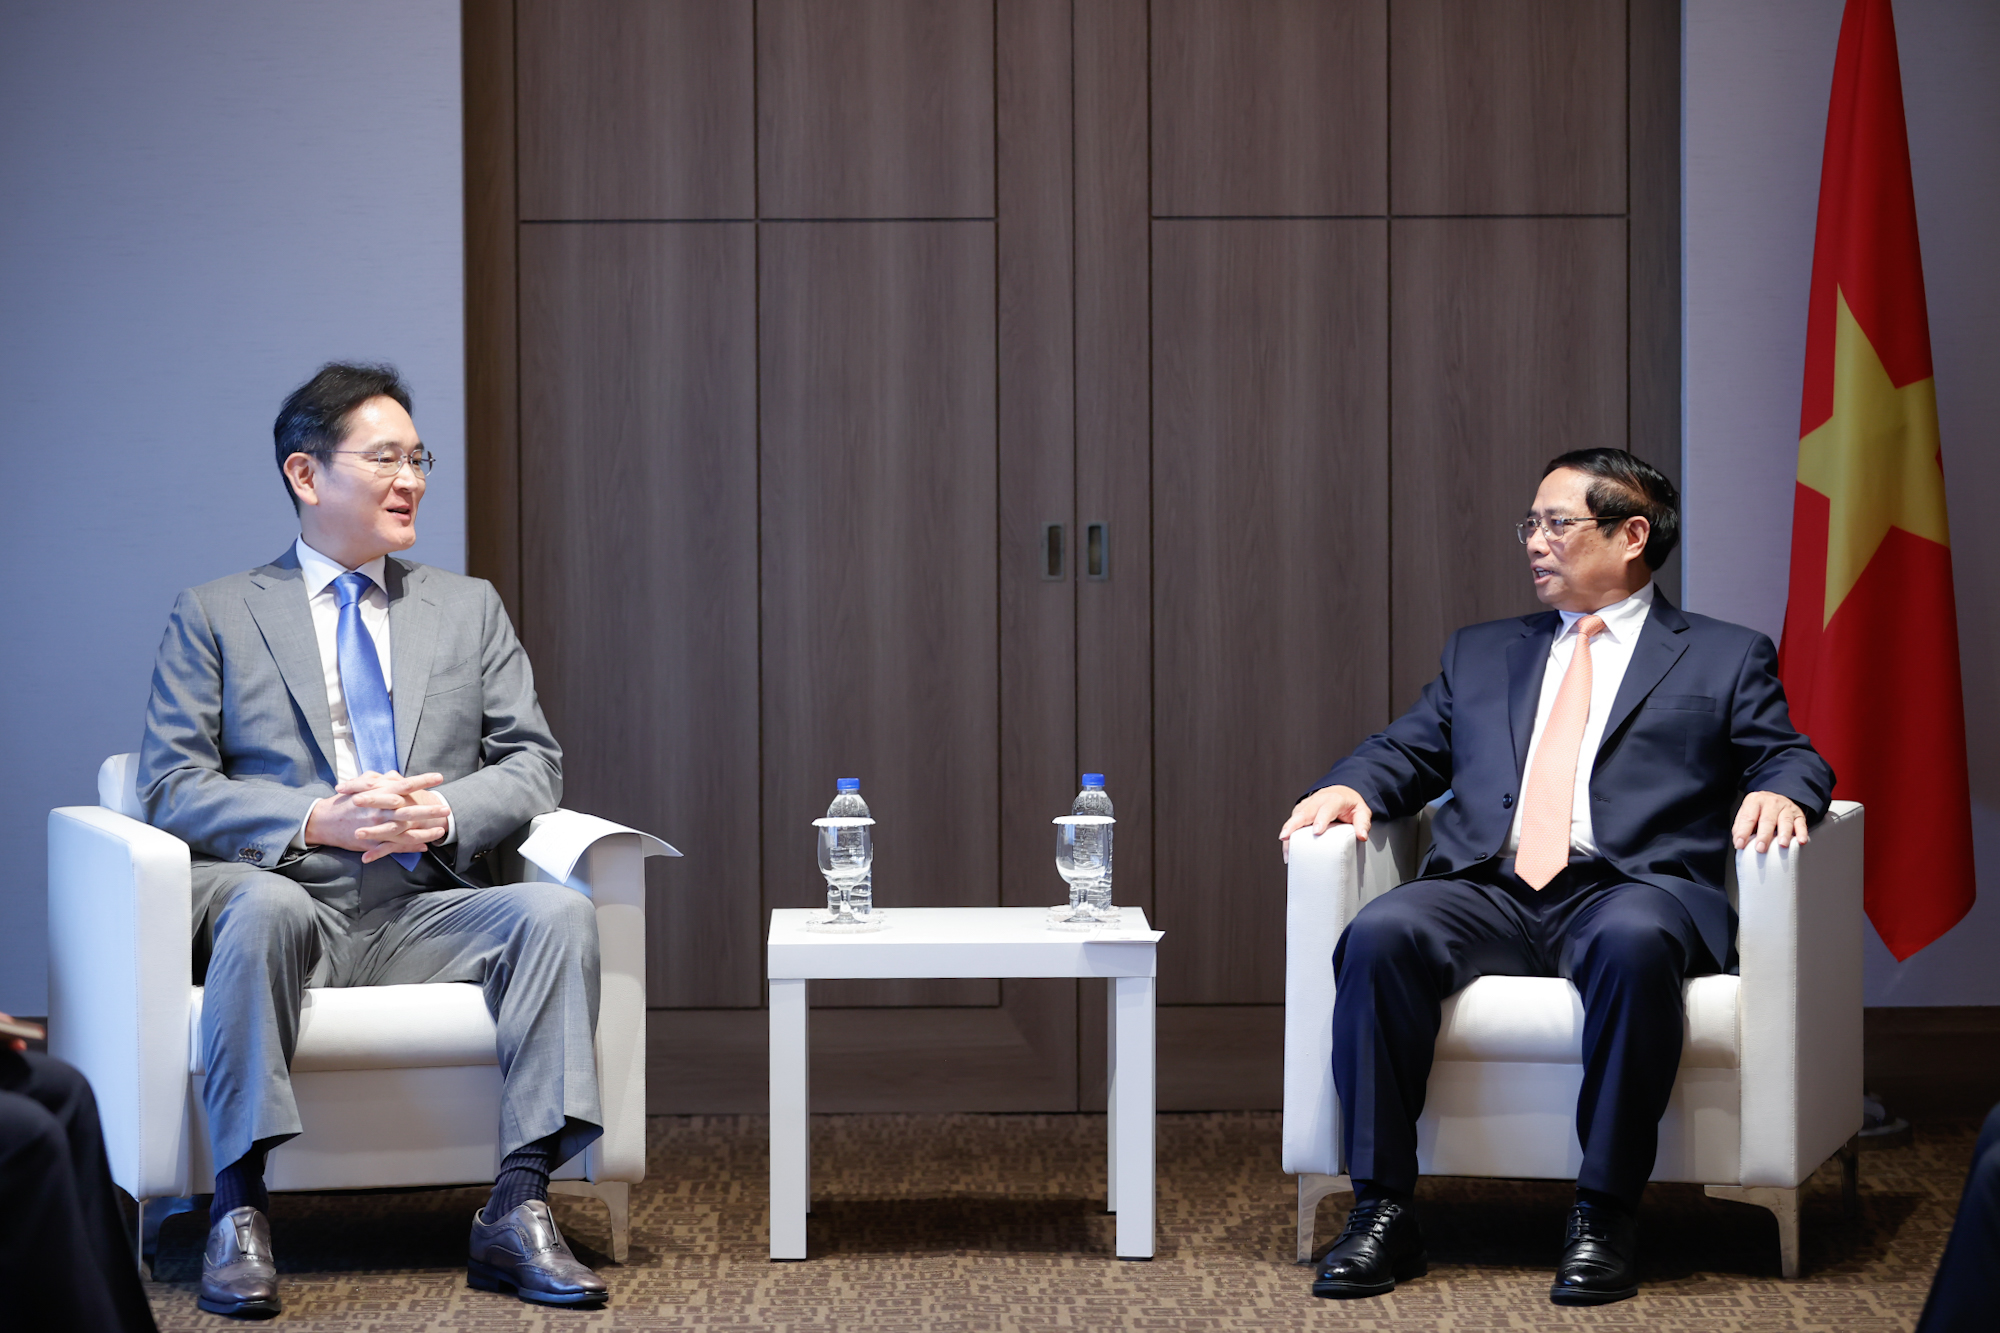 Thủ tướng mong muốn Samsung tiếp tục mở rộng đầu tư, mở rộng thị trường đa dạng hóa chuỗi cung ứng, chuỗi liên kết, coi Việt Nam là cứ điểm sản xuất chiến lược... - Ảnh: VGP/Nhật Bắc